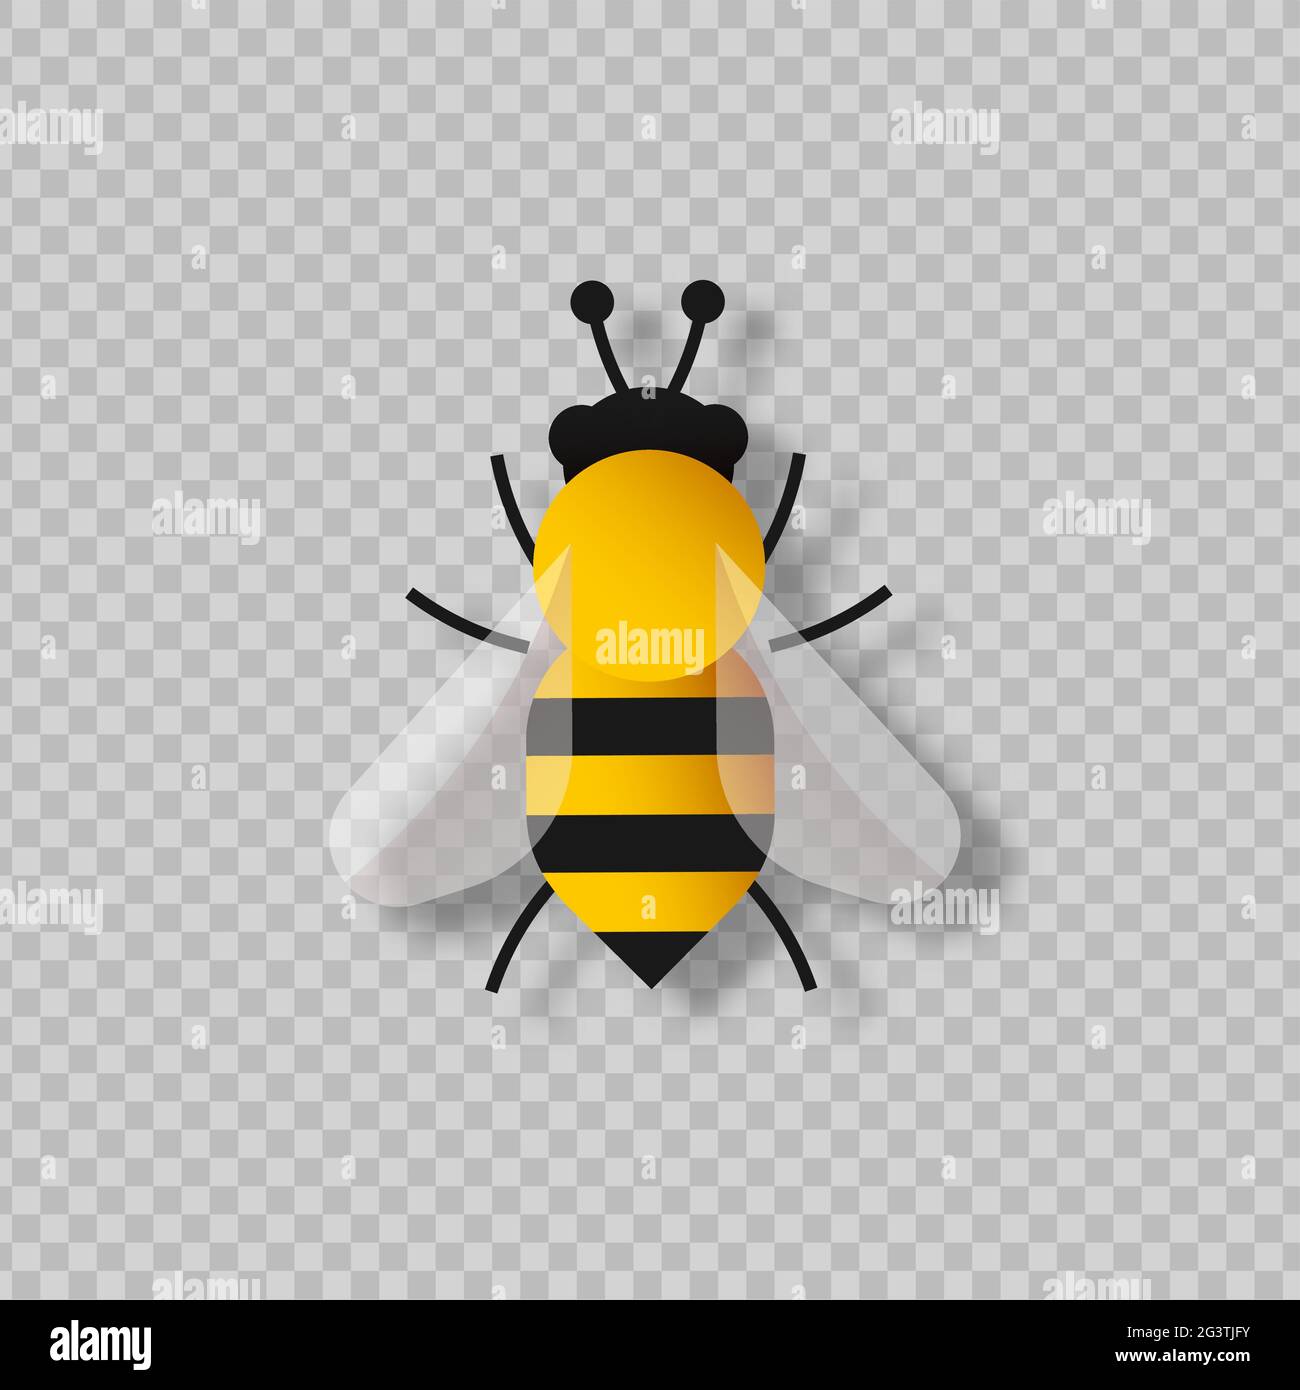 Un insecte d'abeille jaune coupé en papier sur fond transparent isolé. Concept moderne d'illustration de la coupe de papier 3d pour la protection de la nature ou la saison de printemps. Illustration de Vecteur